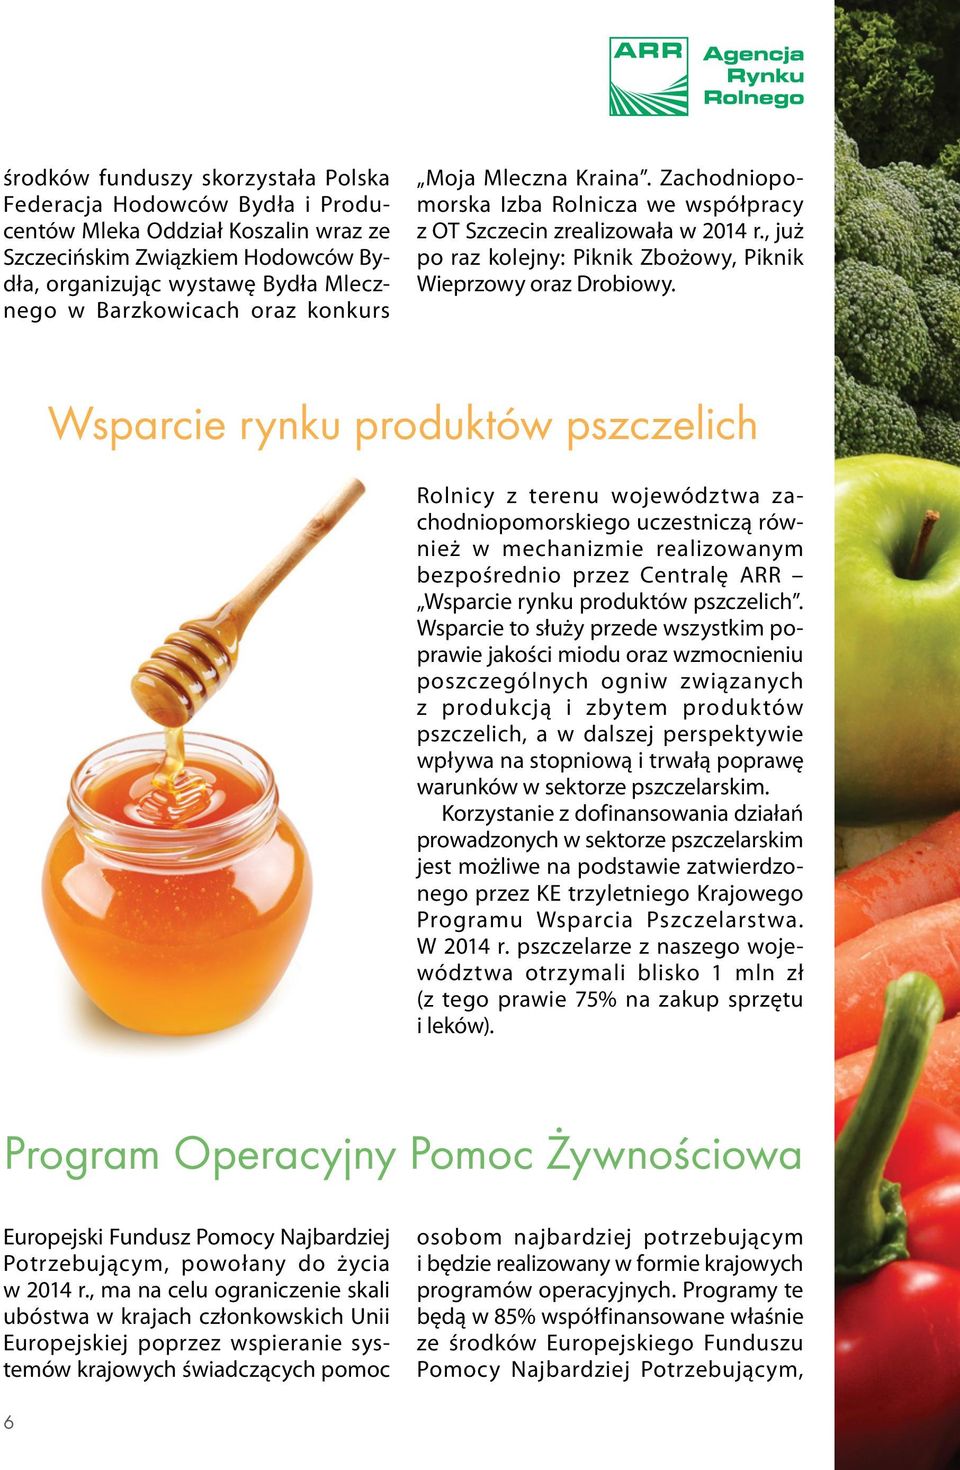 Wsparcie rynku produktów pszczelich Rolnicy z terenu województwa zachodniopomorskiego uczestniczą również w mechanizmie realizowanym bezpośrednio przez Centralę ARR Wsparcie rynku produktów